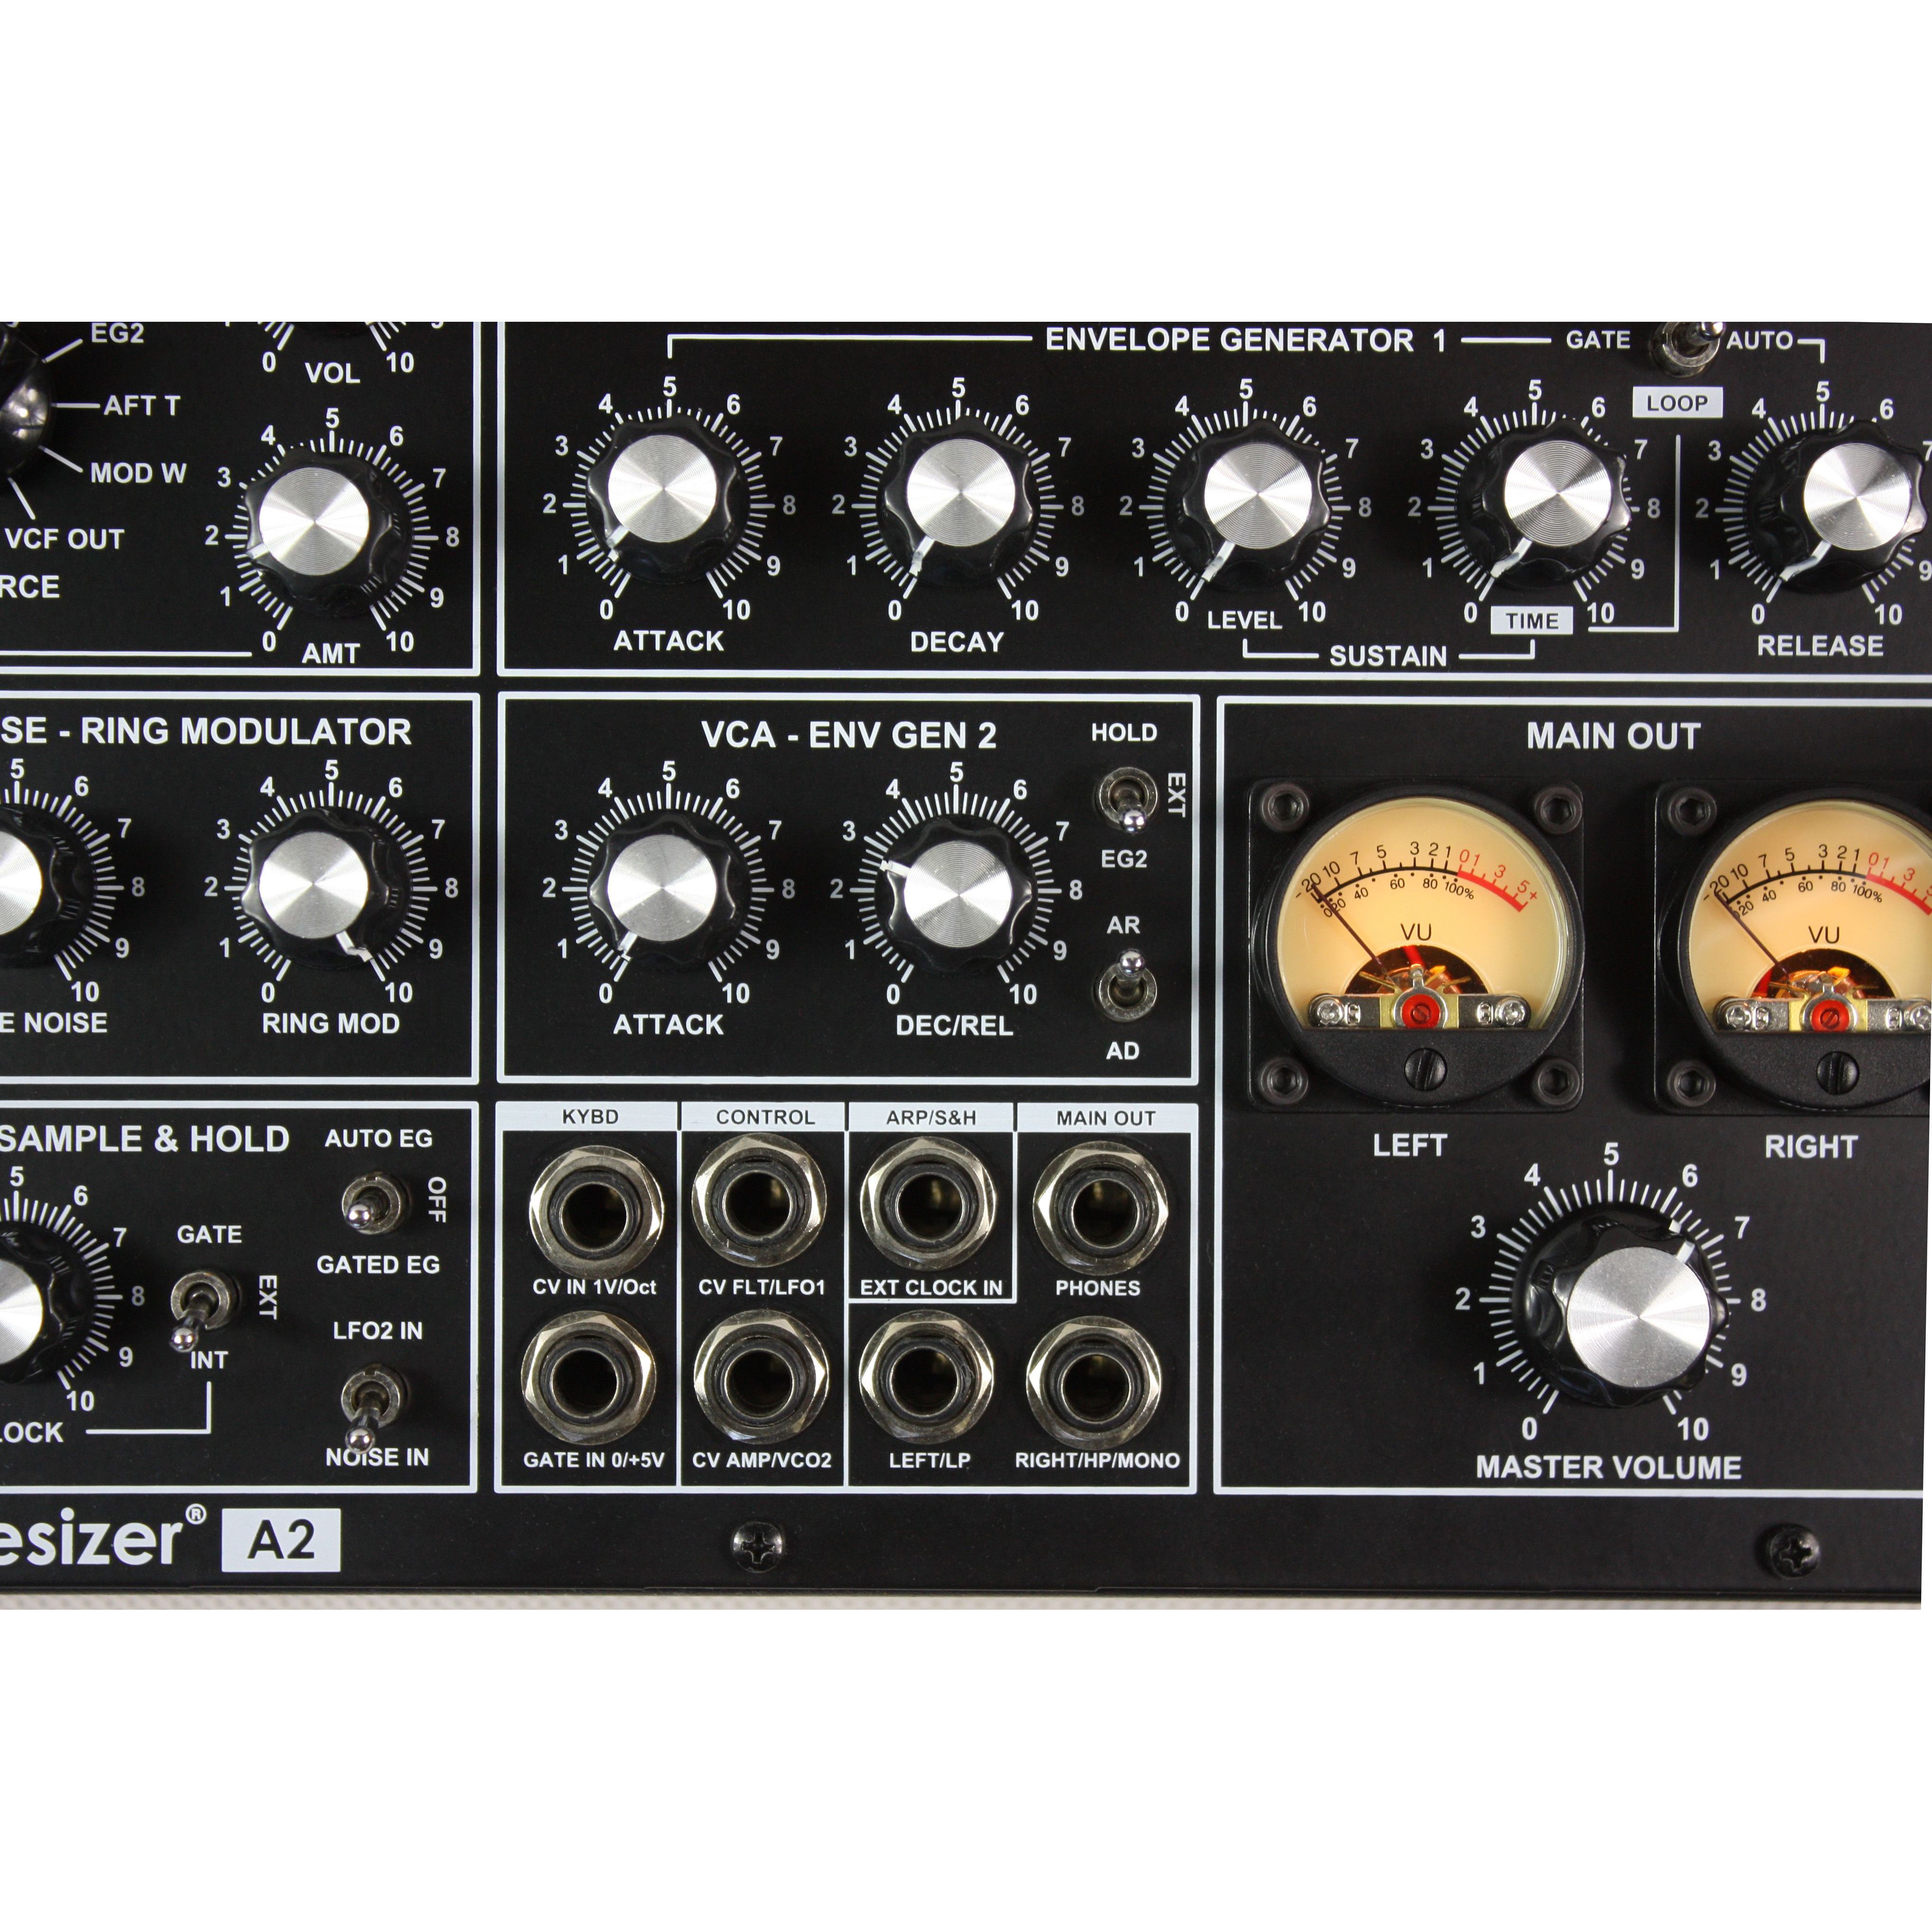 Grp Synthesizer A2 Настольные аналоговые синтезаторы